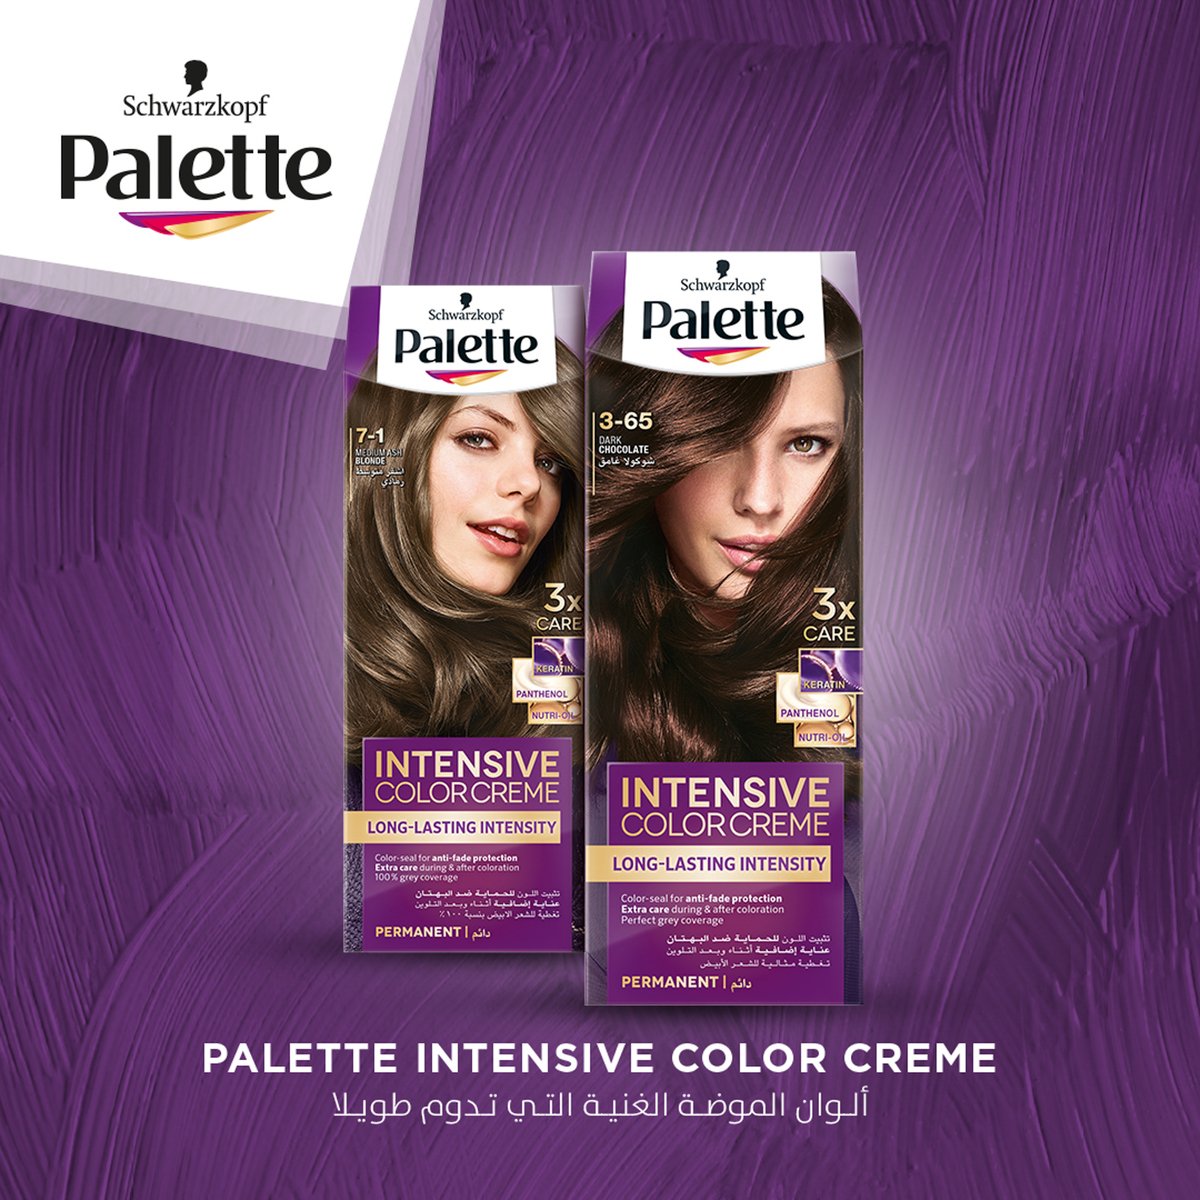 Palette Intensive Color Creme 10-1 Arctic Silver Blonde 1 pkt